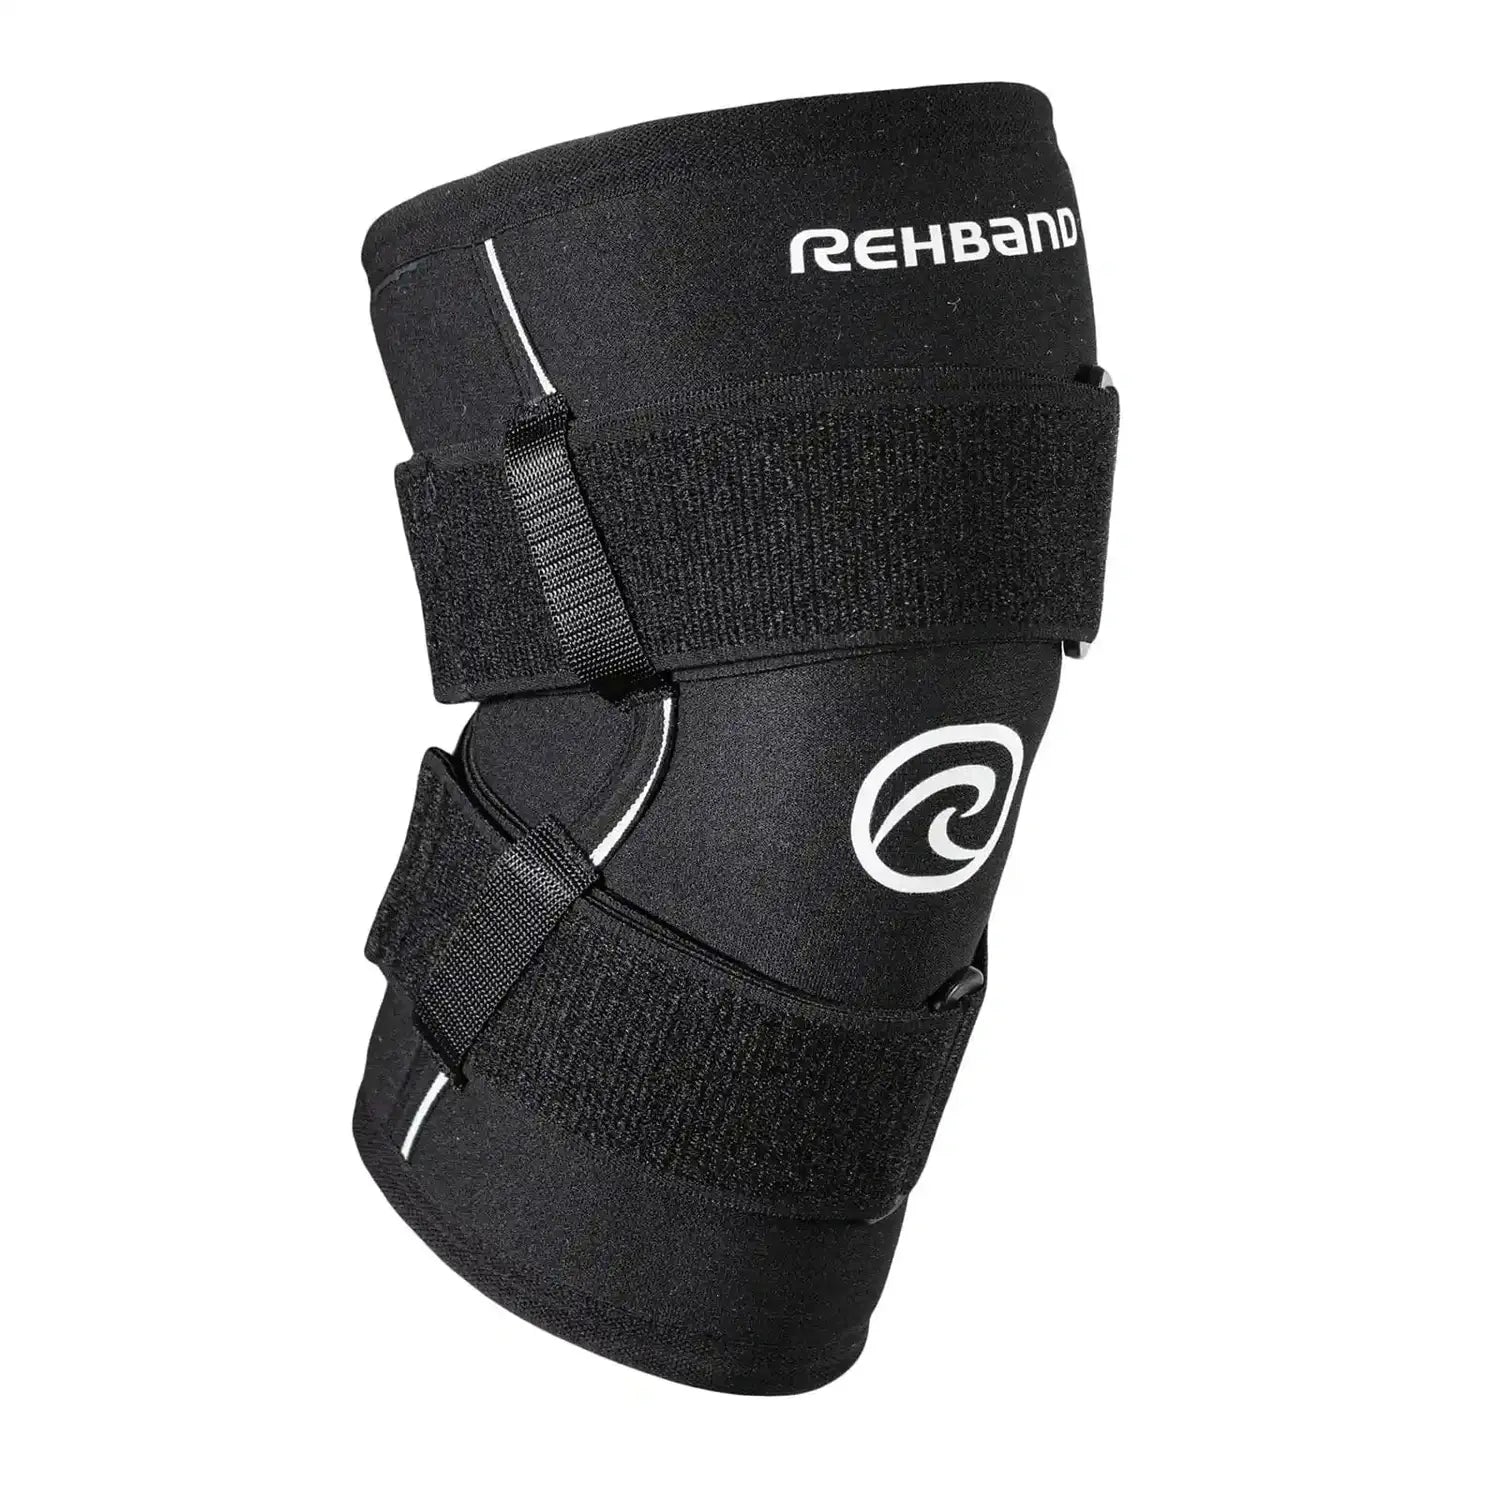 Rehband X-RX Knee Support 7mm mit Straps Schwarz kaufen bei HighPowered.ch